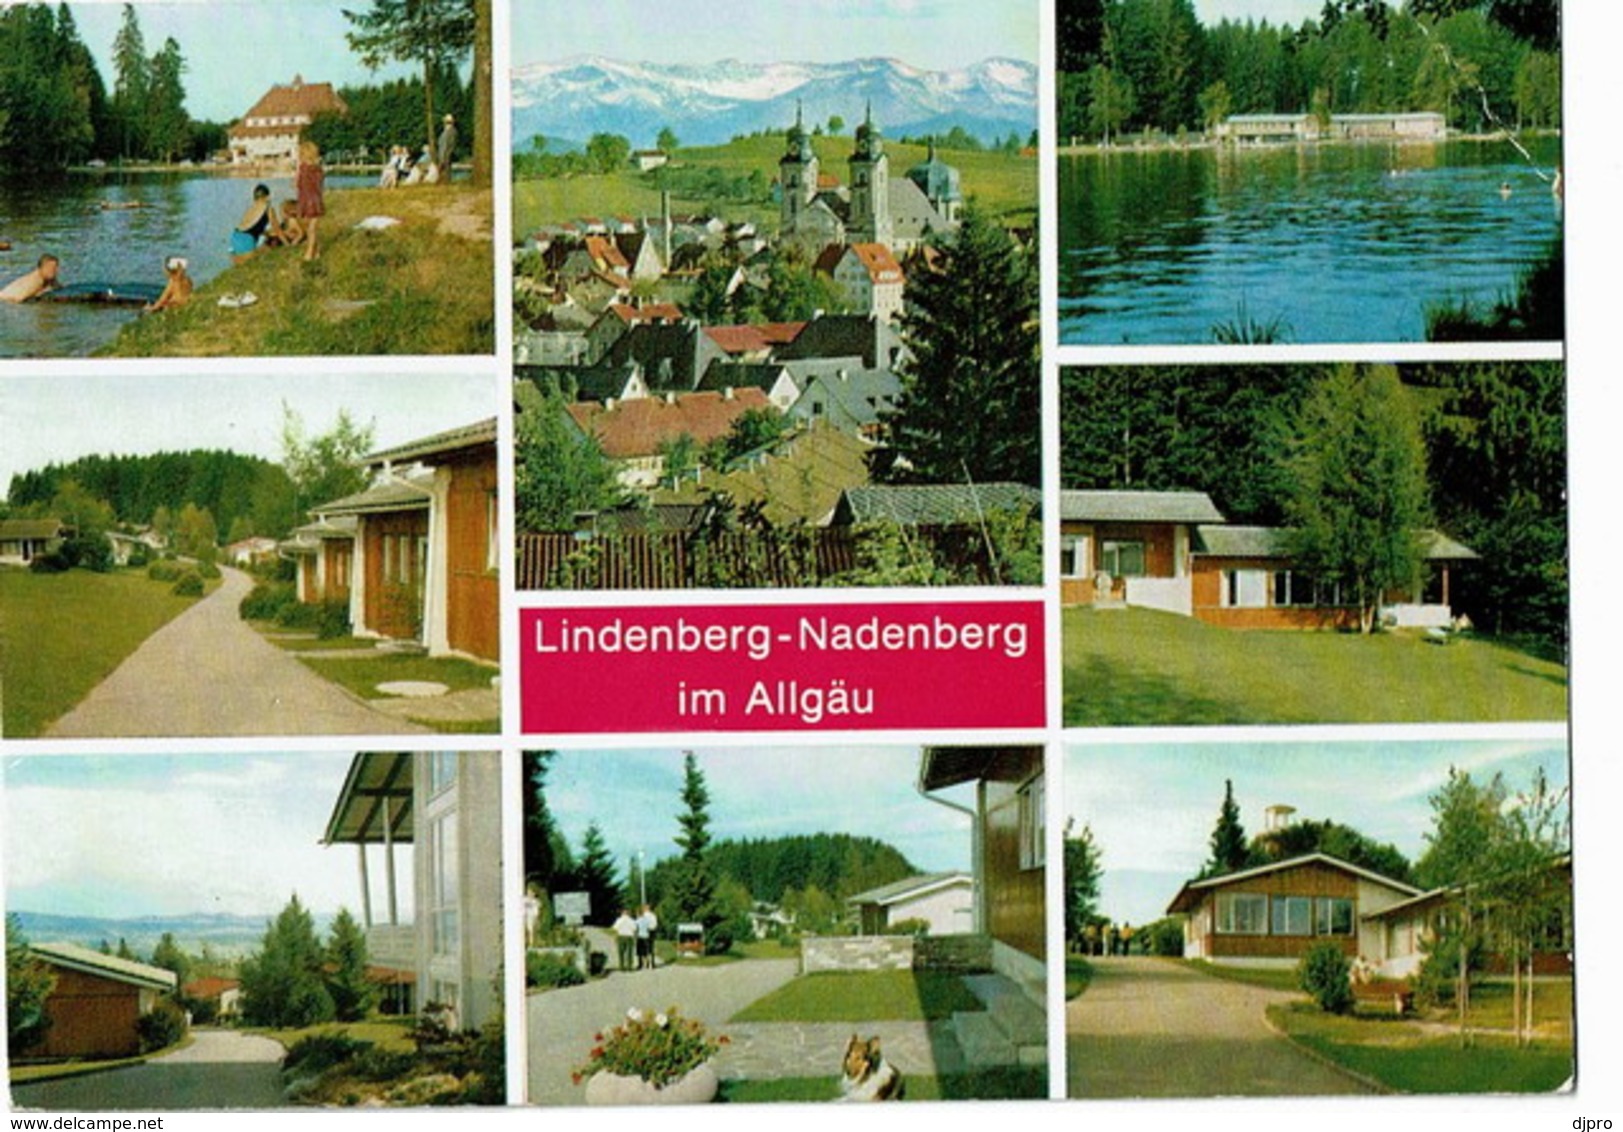 Lindenberg Nadenberg - Lindenberg I. Allg.